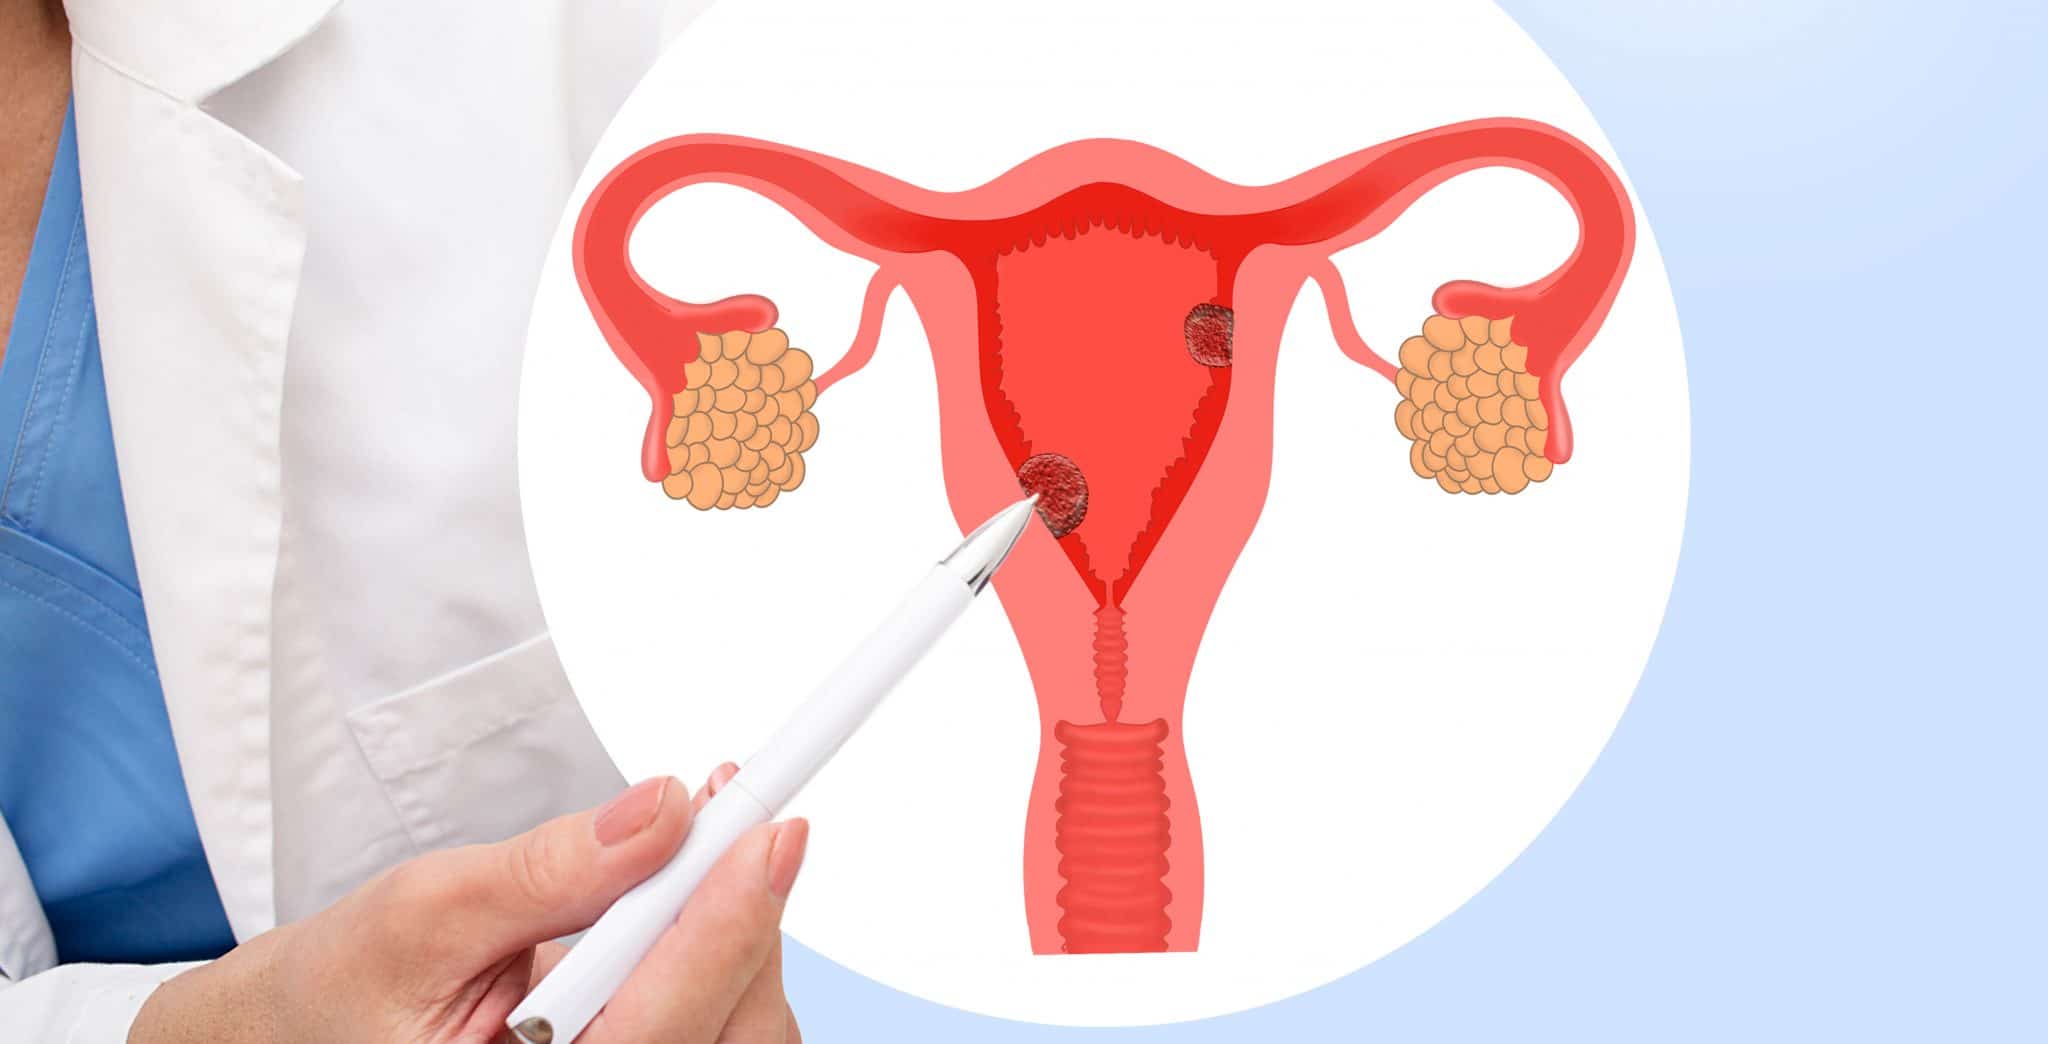 Un professionnel de la santé montre un schéma d'un système reproducteur féminin mettant en évidence les ovaires, l'utérus et les traitements potentiels contre la polype utérine.